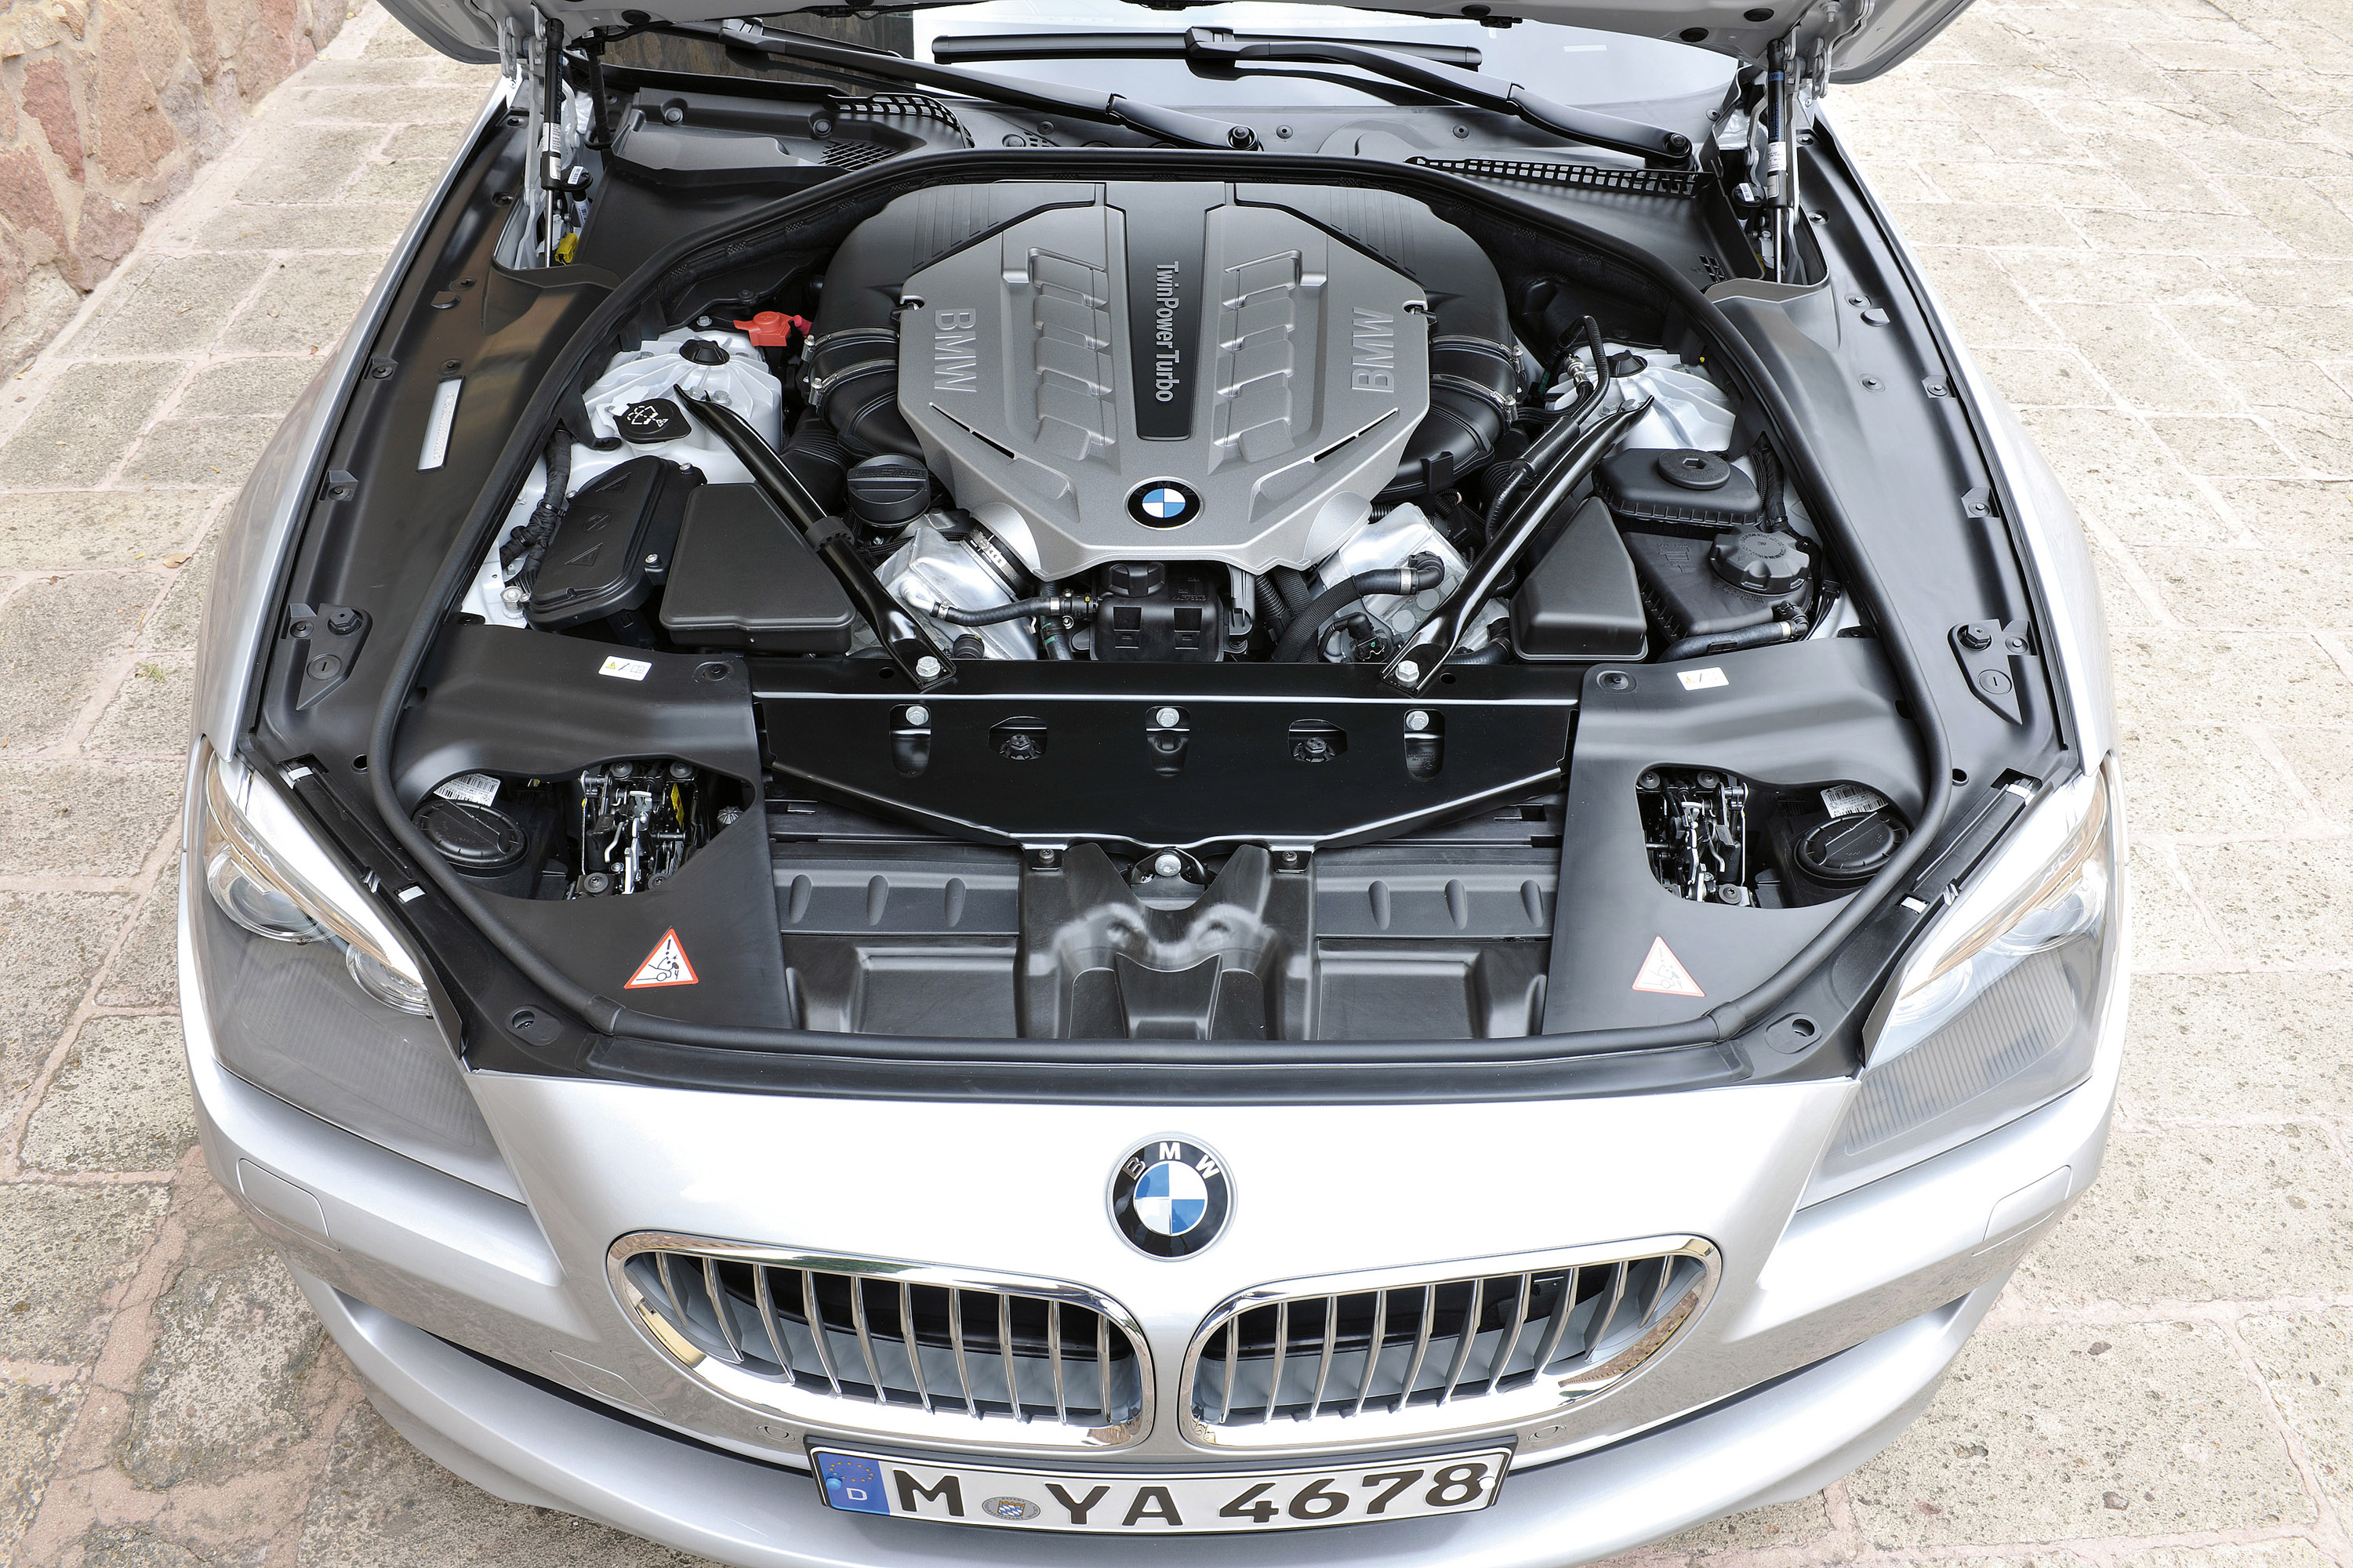 Открыть капот bmw. Двигатель BMW 650i. БМВ 650 f06 мотор. BMW f02 под капот. BMW 650i под капотом.